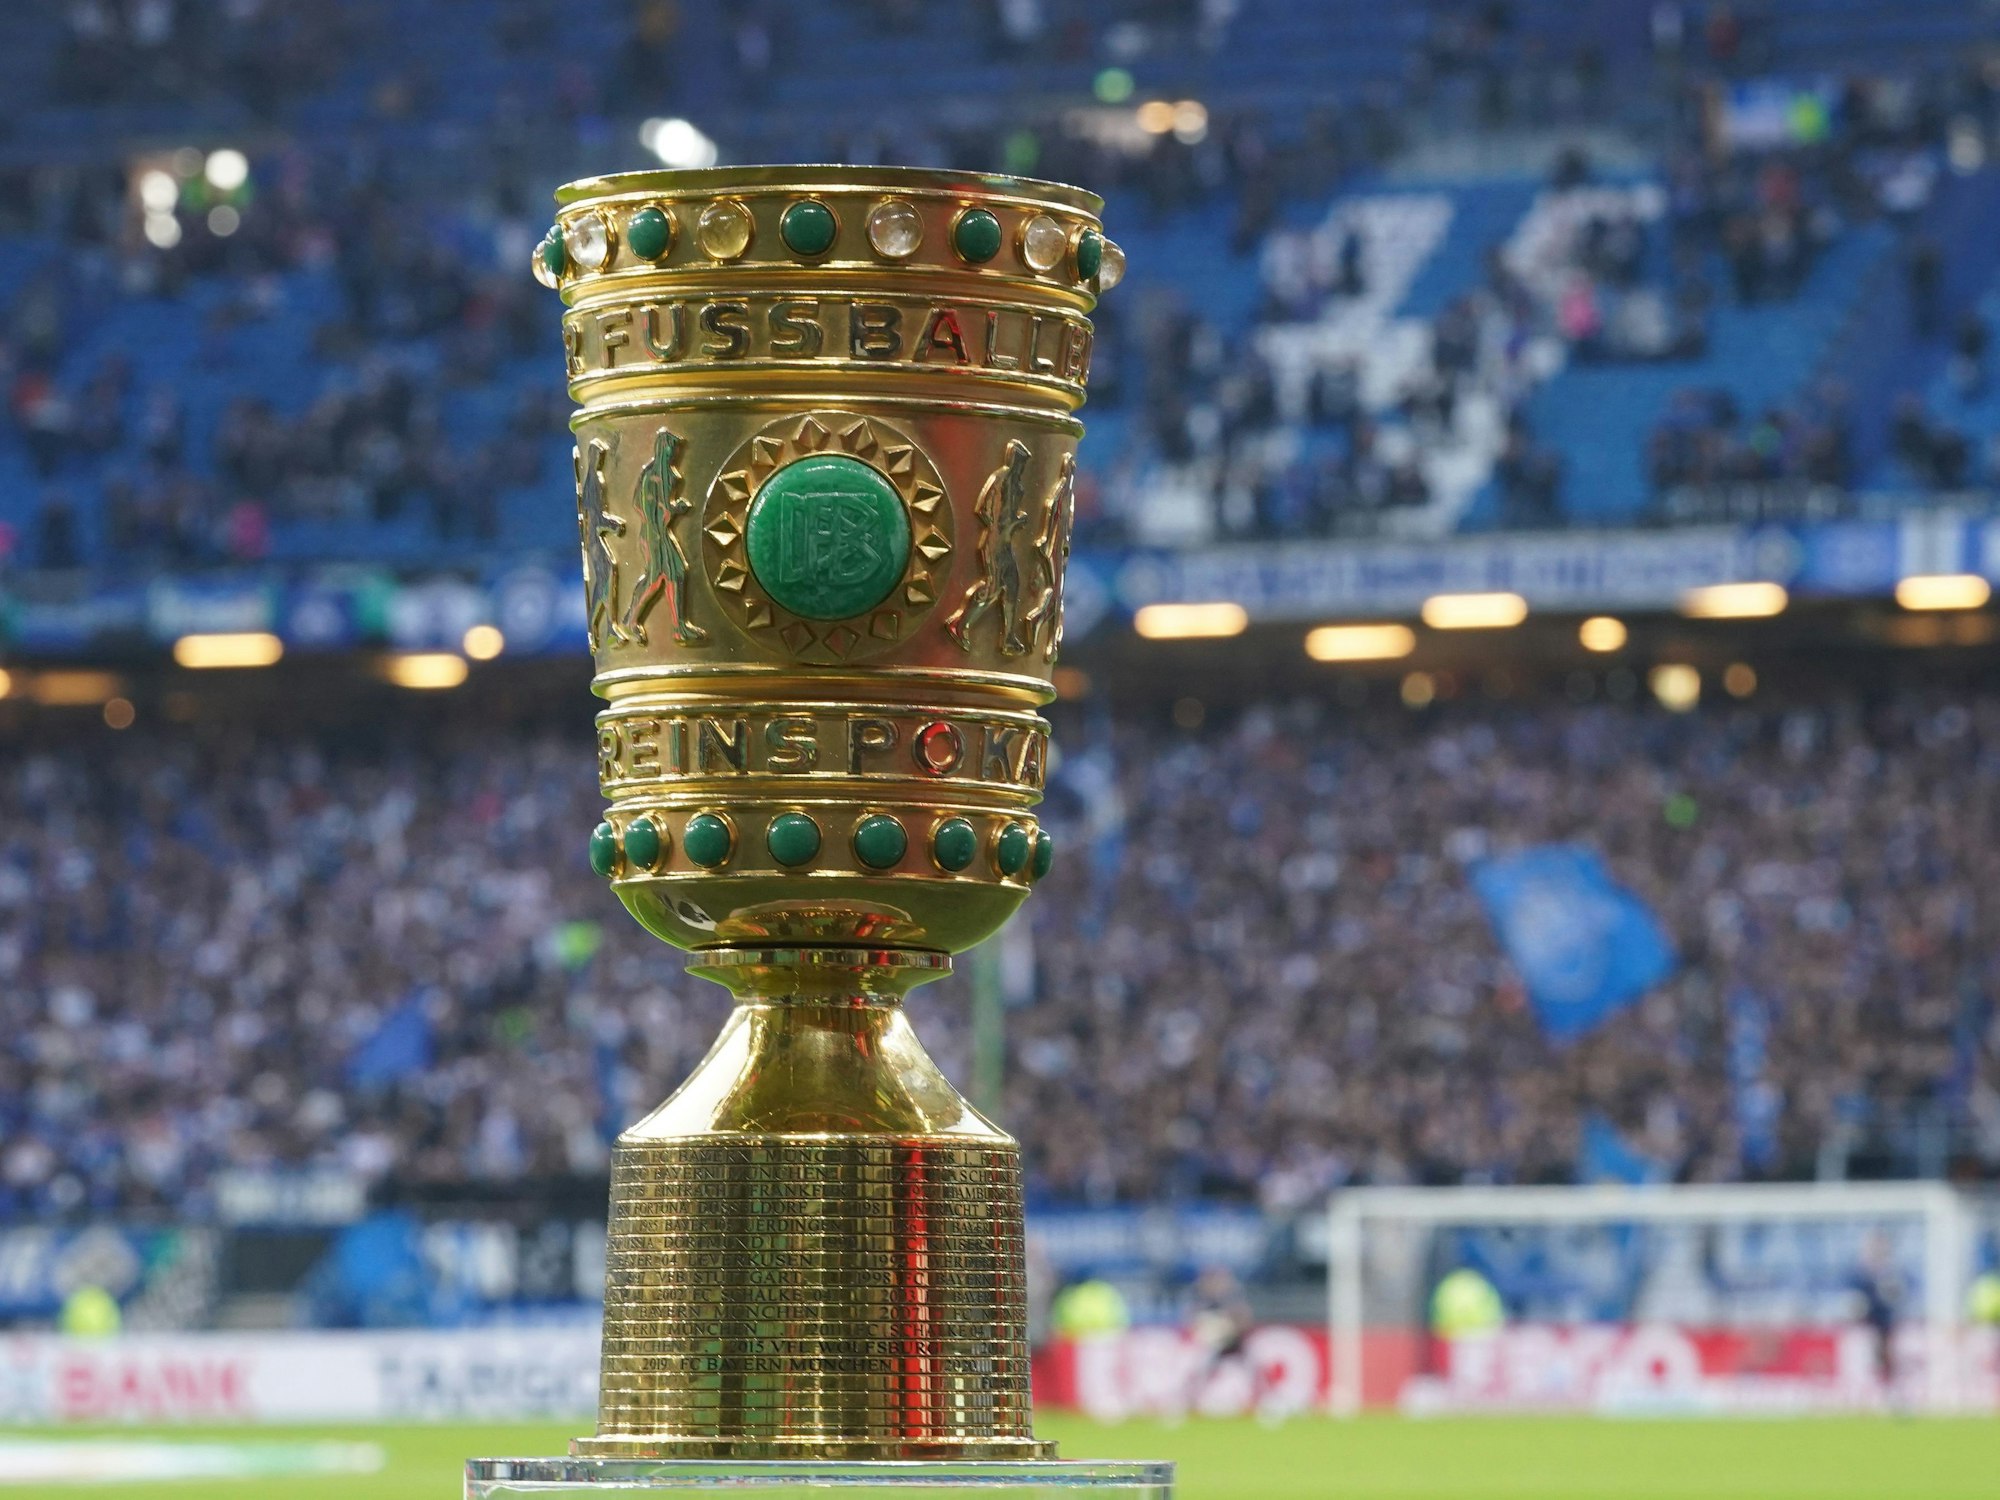 Der DFB-Pokal steht am 19. April 2022 auf einem Podest im Stadion des Hamburger SV.